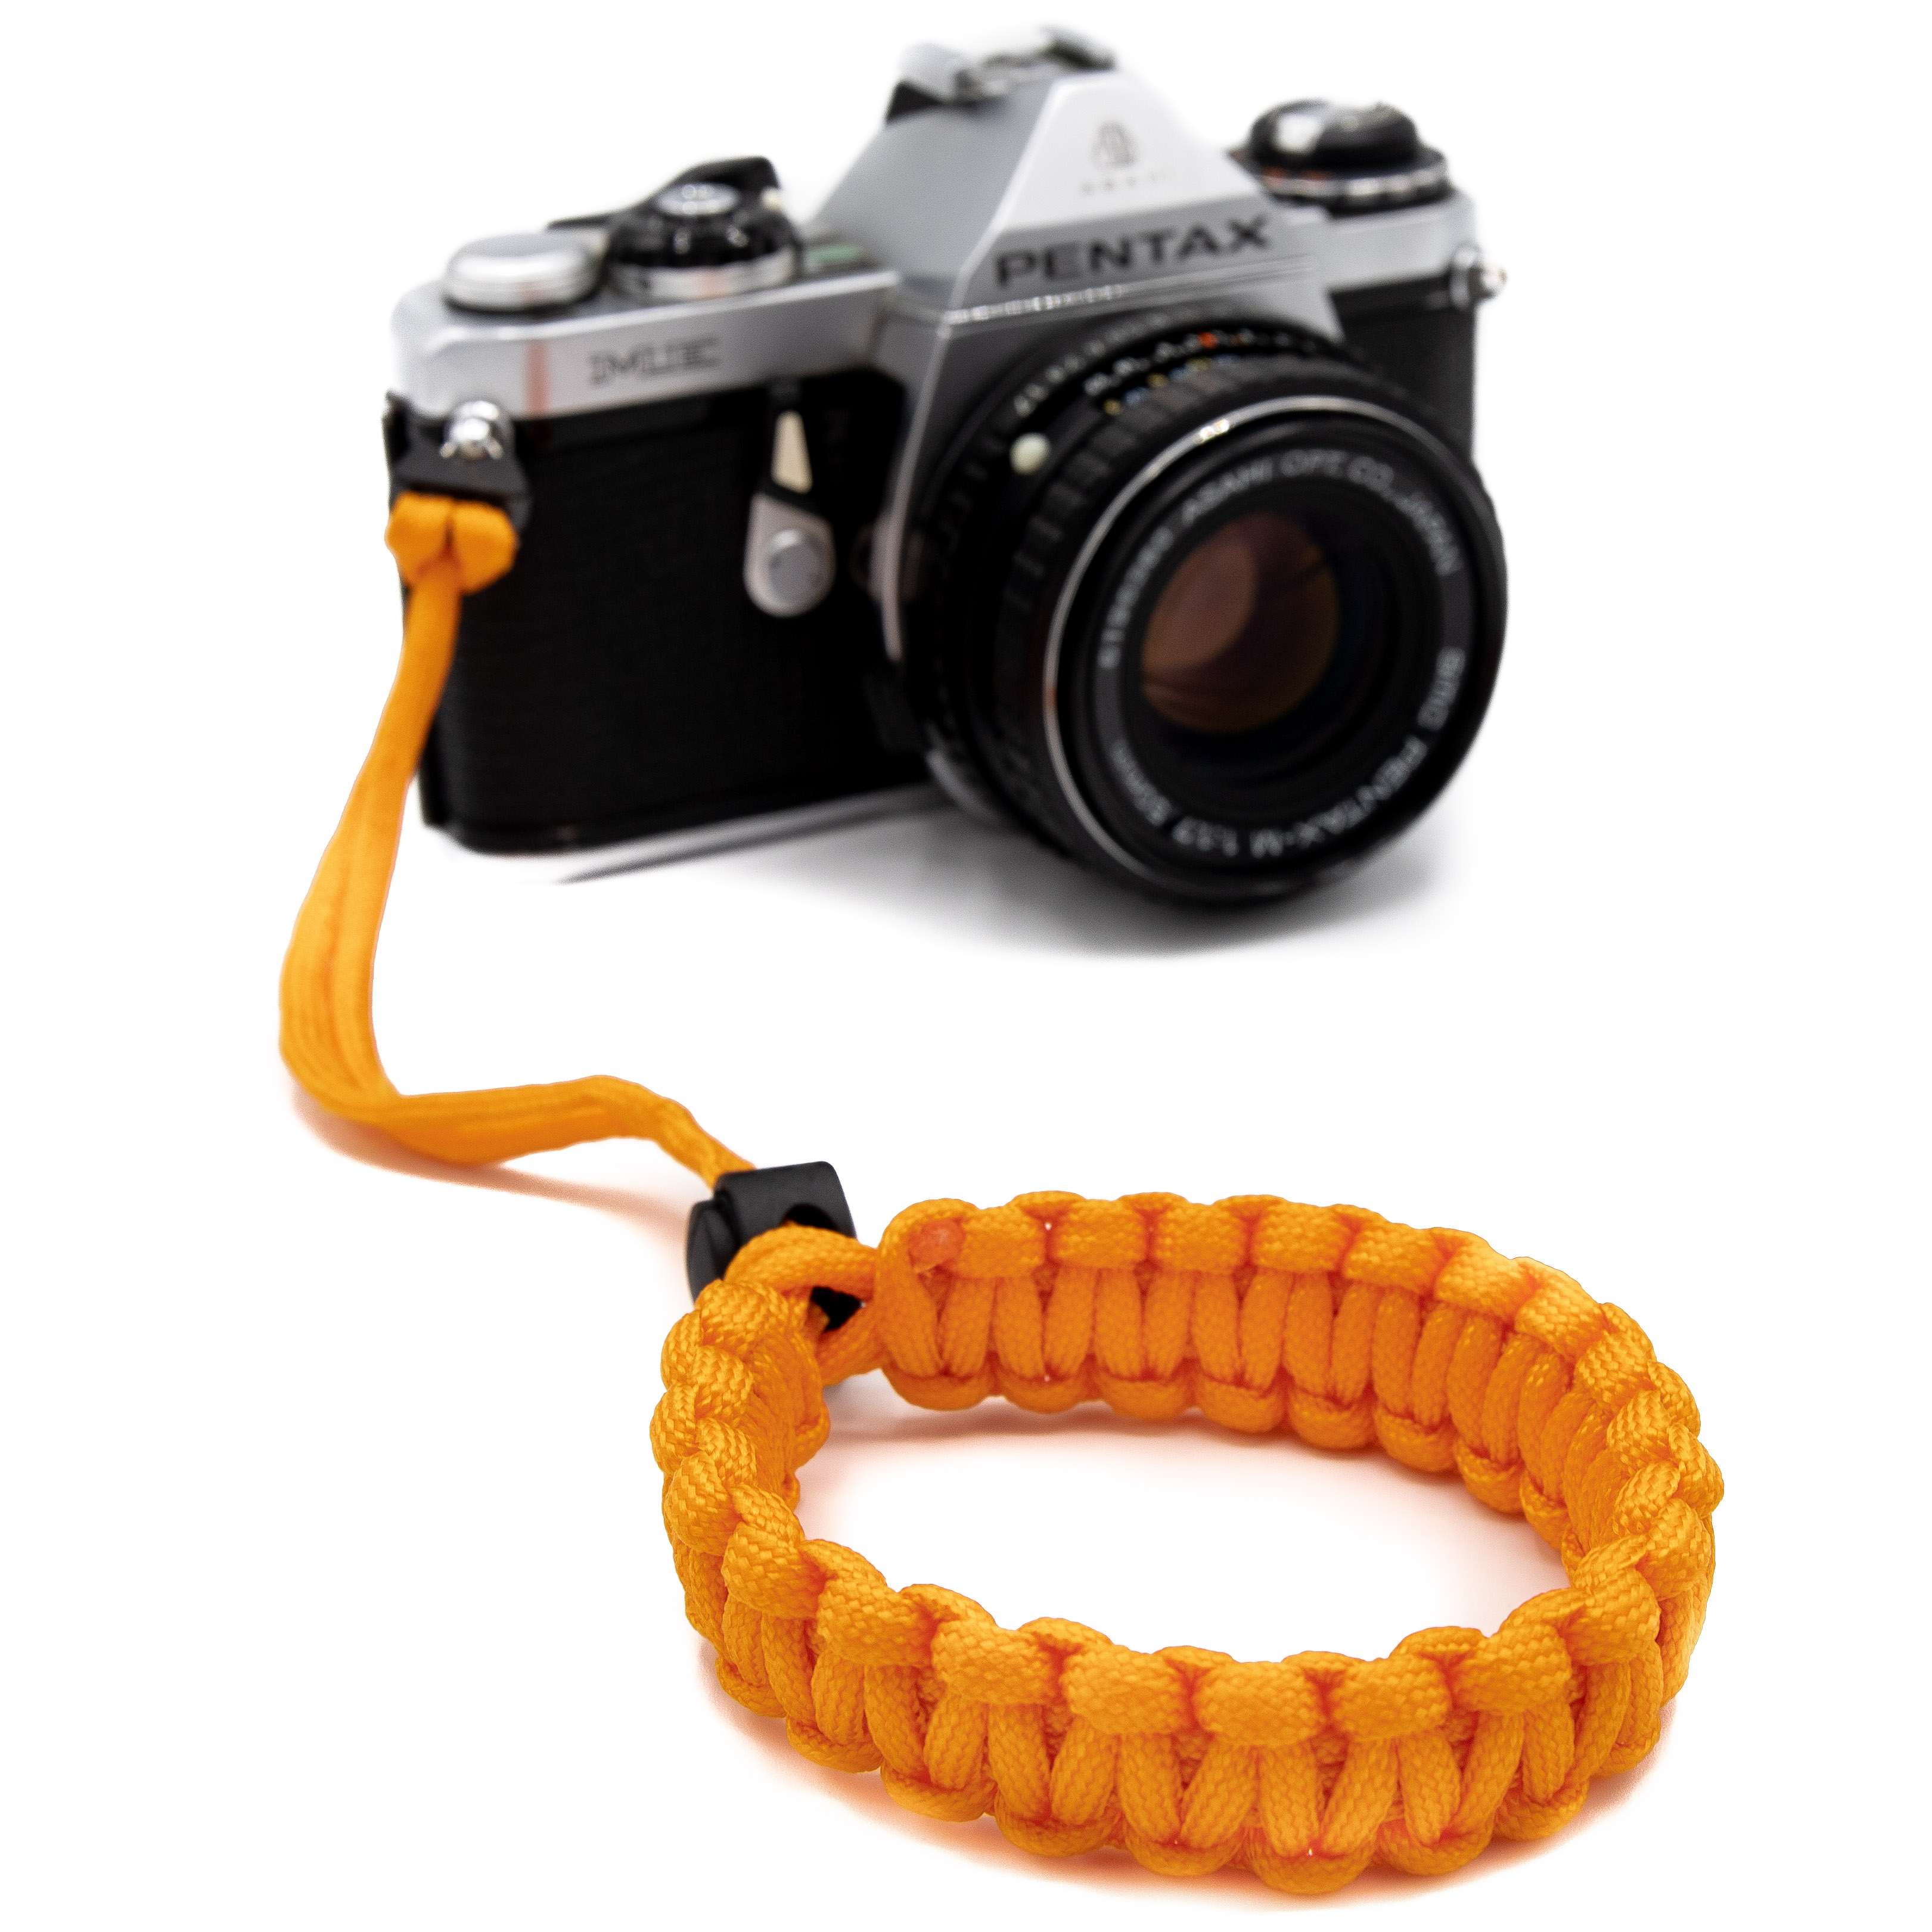 LENS-AID Kamera Handschlaufe aus Paracord Handschlaufe, Kamera Handgelenk, Orange fürs